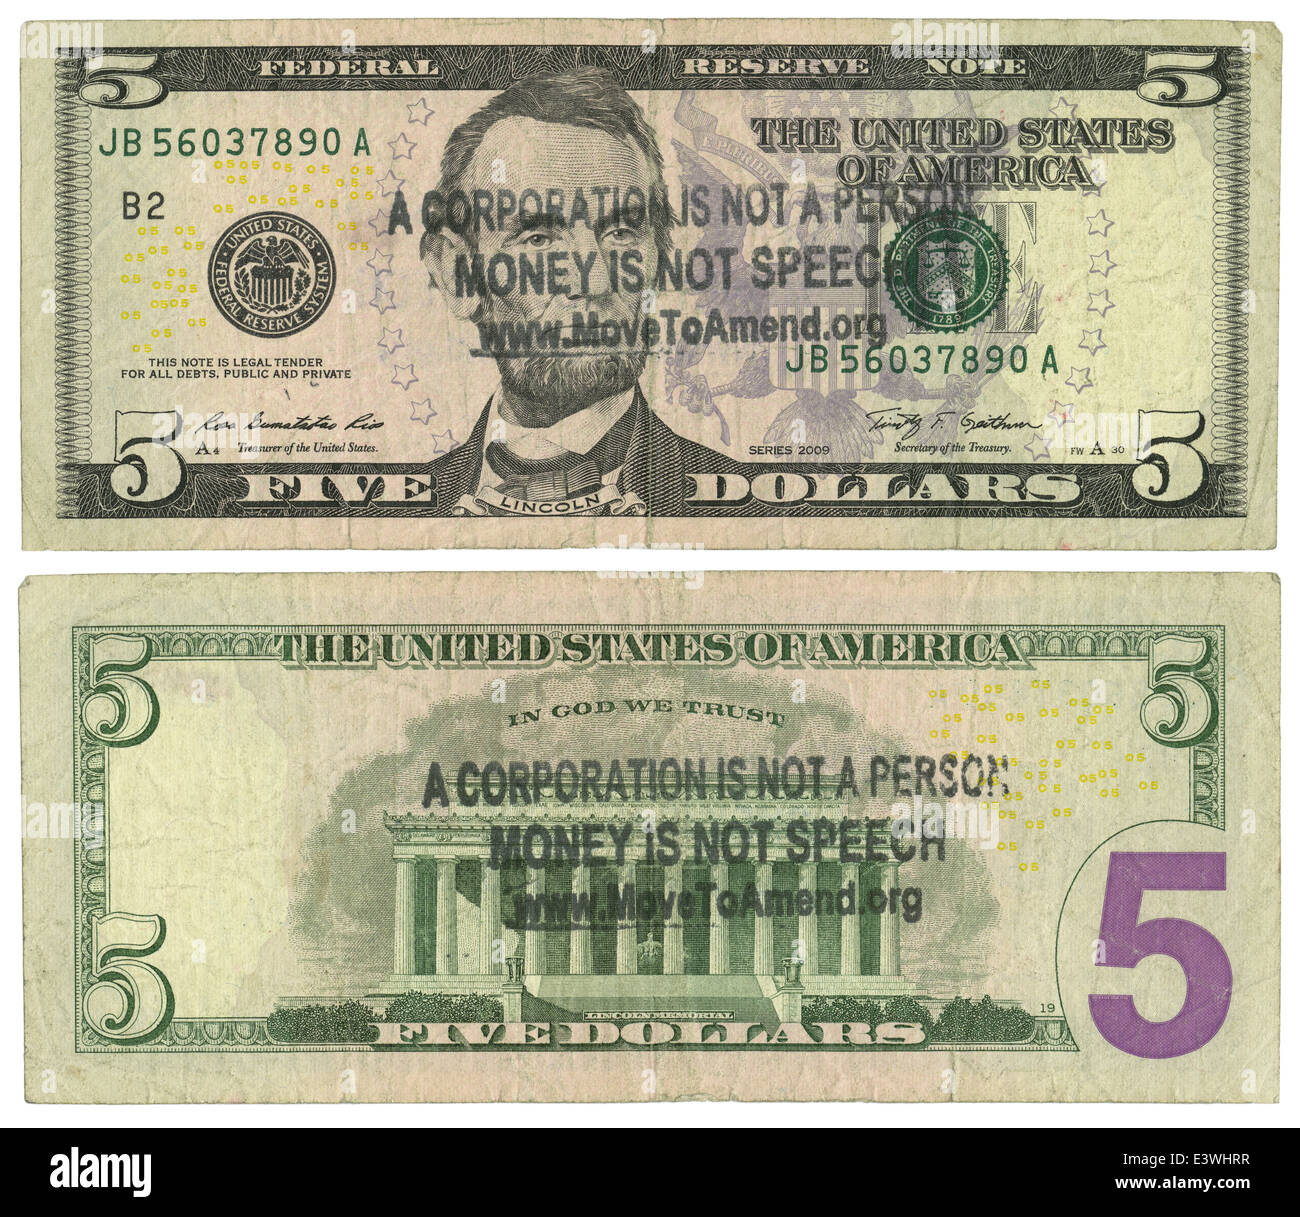 Un billet de 5 $ estampillé avec 'une société n'est pas une personne / l'argent n'est pas Discours / www.SETFLAT Amend.org.' Banque D'Images